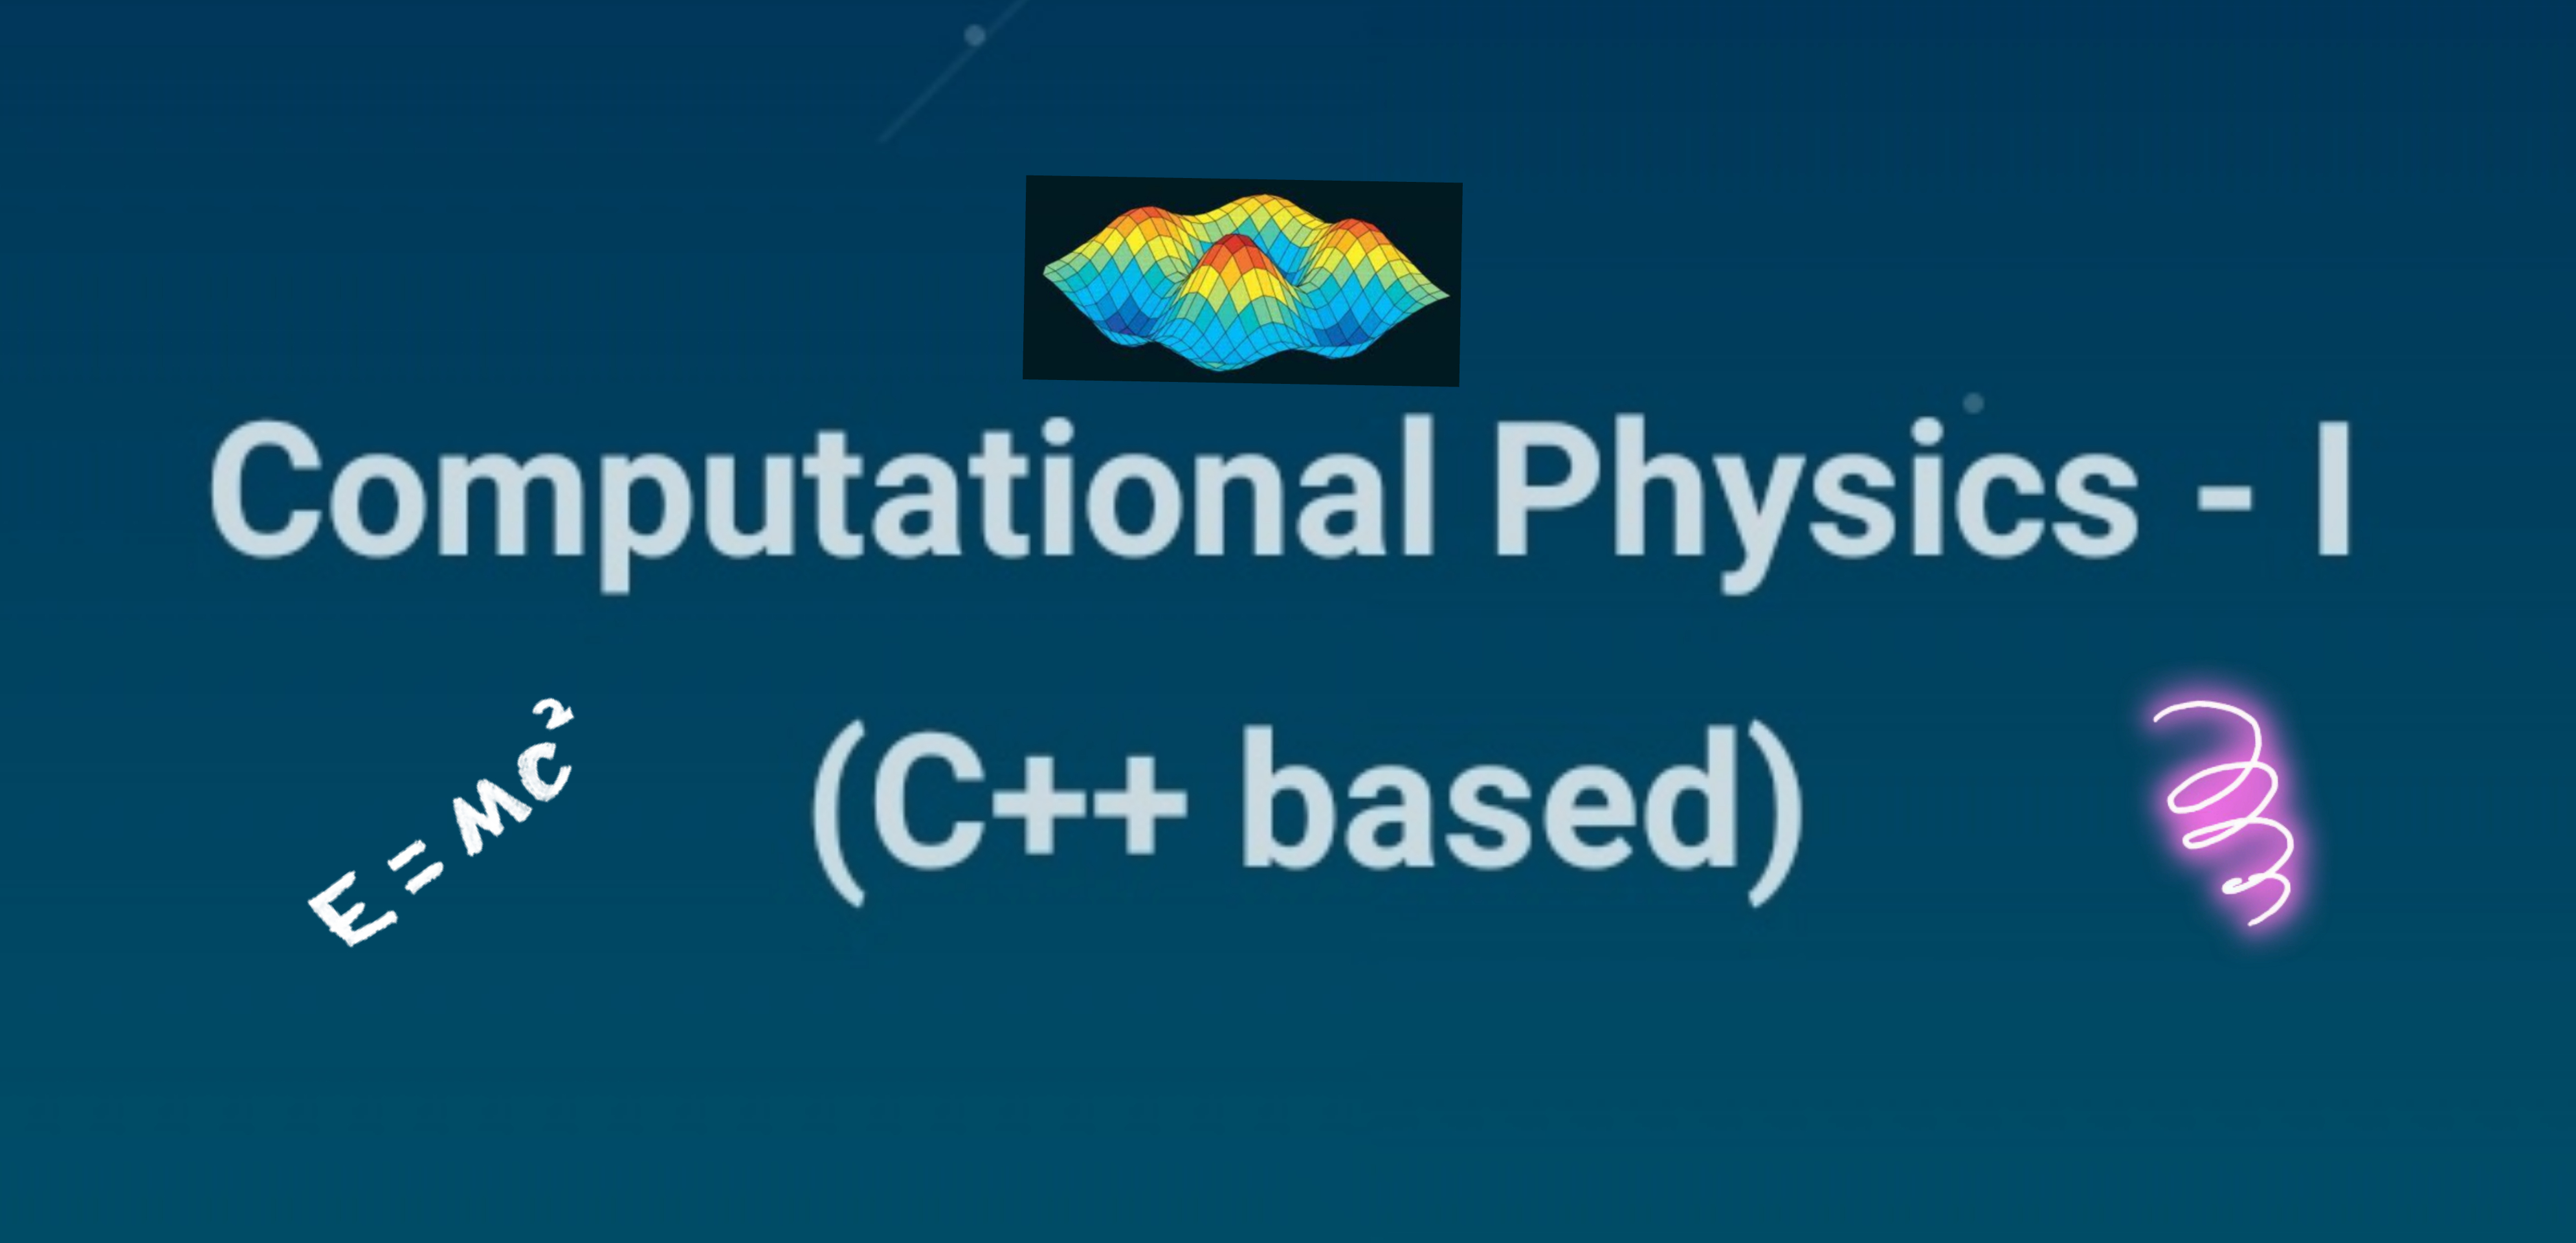 Computational Physics - I